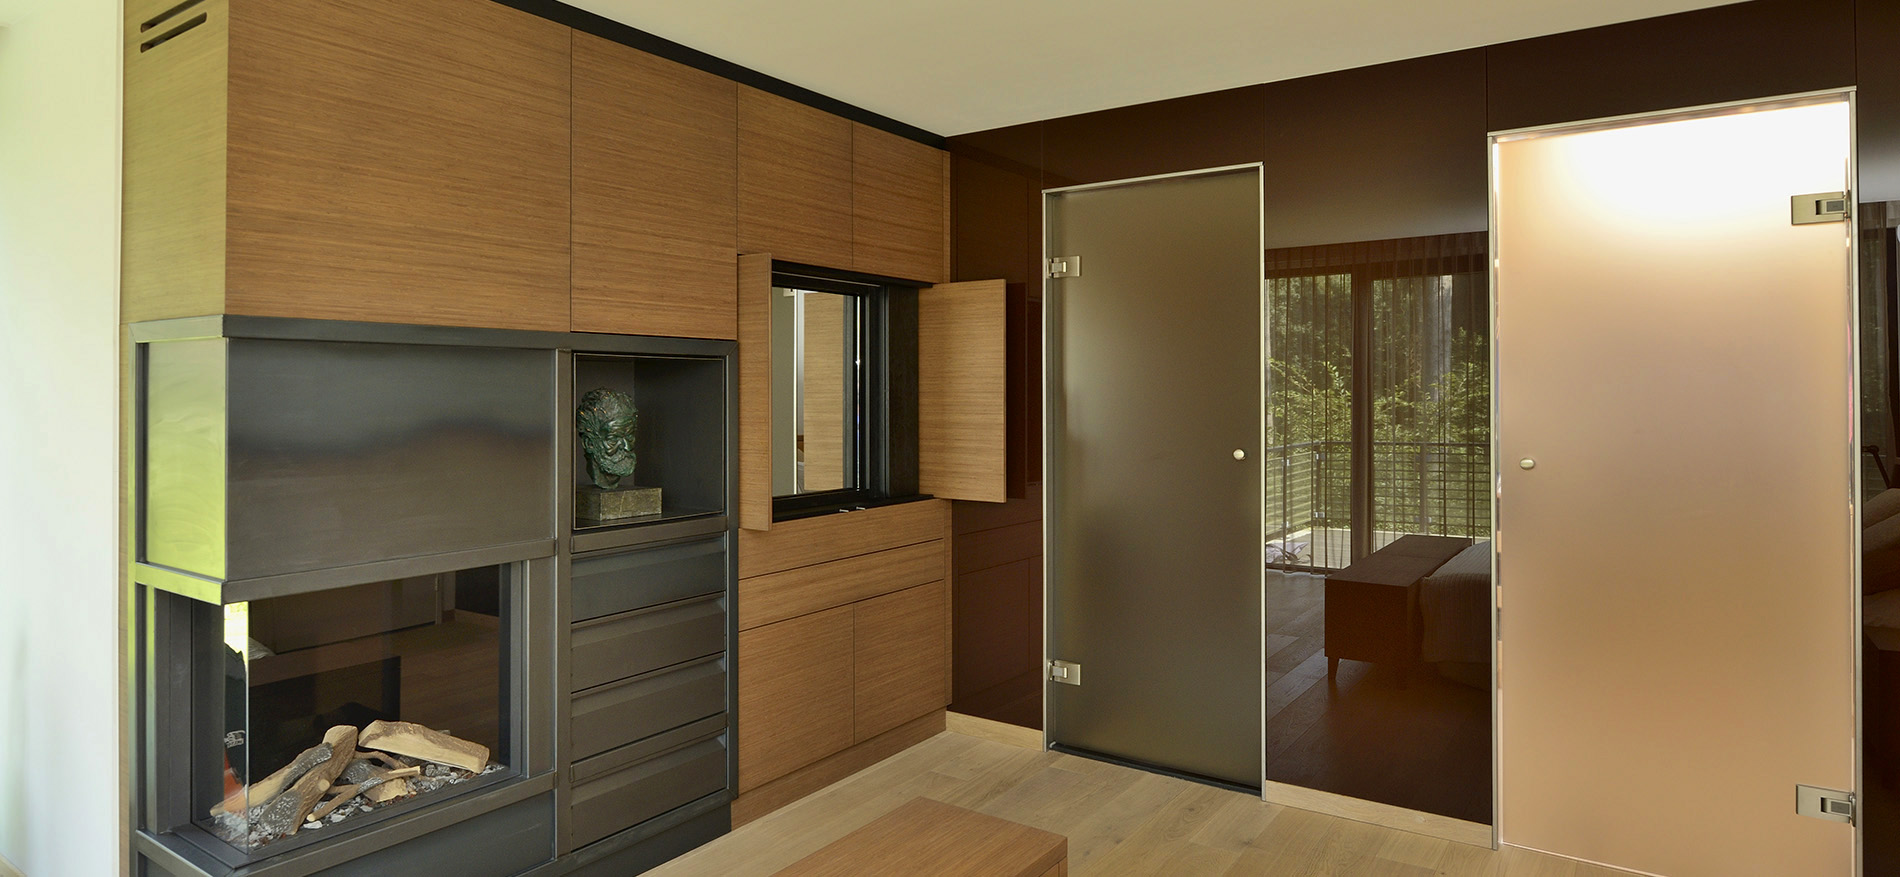 Maßarbeit in Möbel - Residential Interior Design